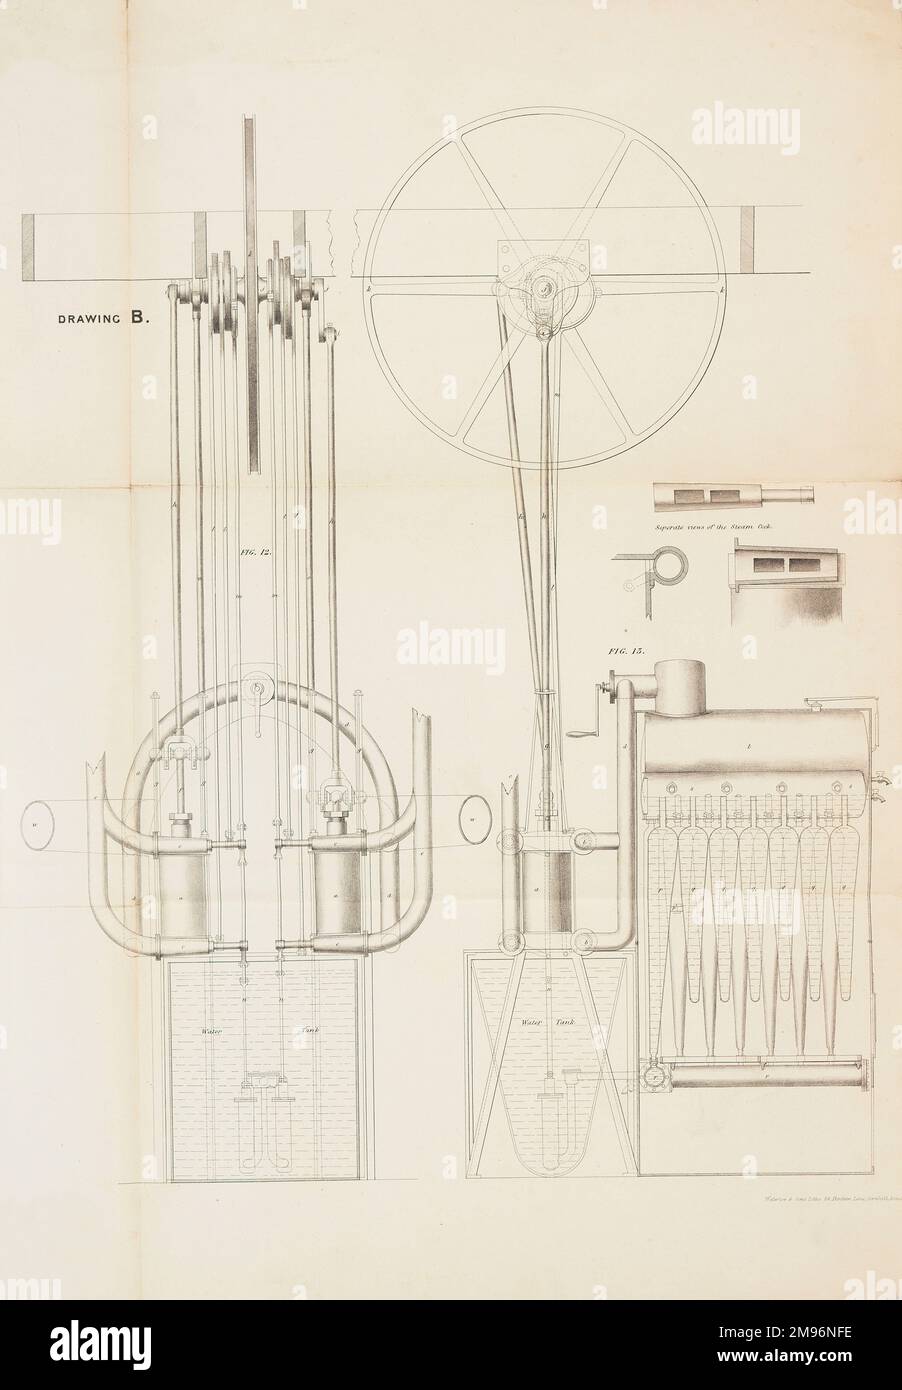 Der Luftdampfwagen -- vergrößerte Ansicht der Dampfmaschine. Diese Flugmaschine wurde 1842 von William Samuel Henson (1812-1888) und John Stringfellow (1799-1883) patentiert. Stockfoto